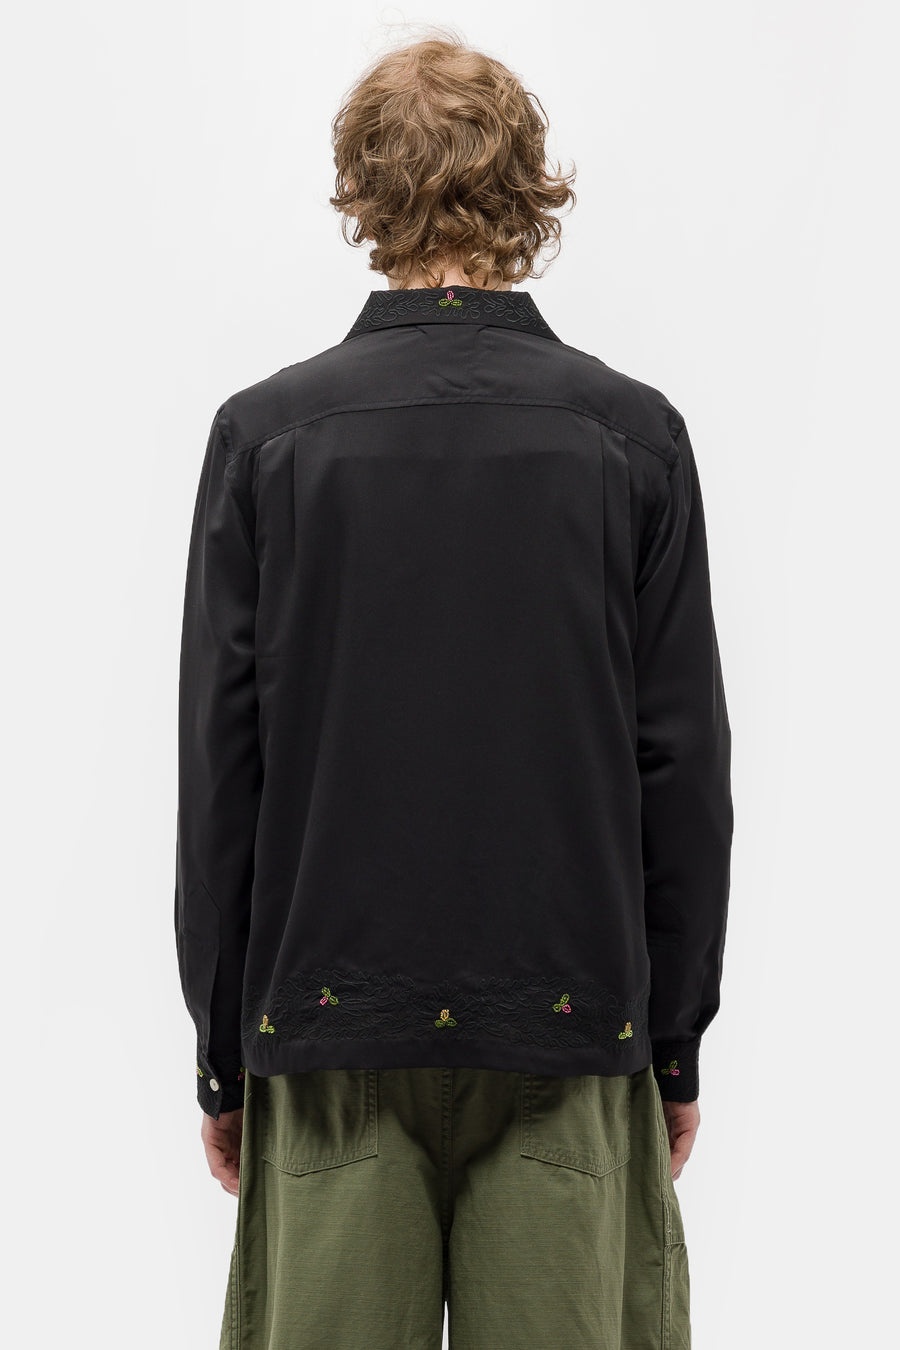 Beaded Framboise LS Shirt in Black/Multicolor - 3